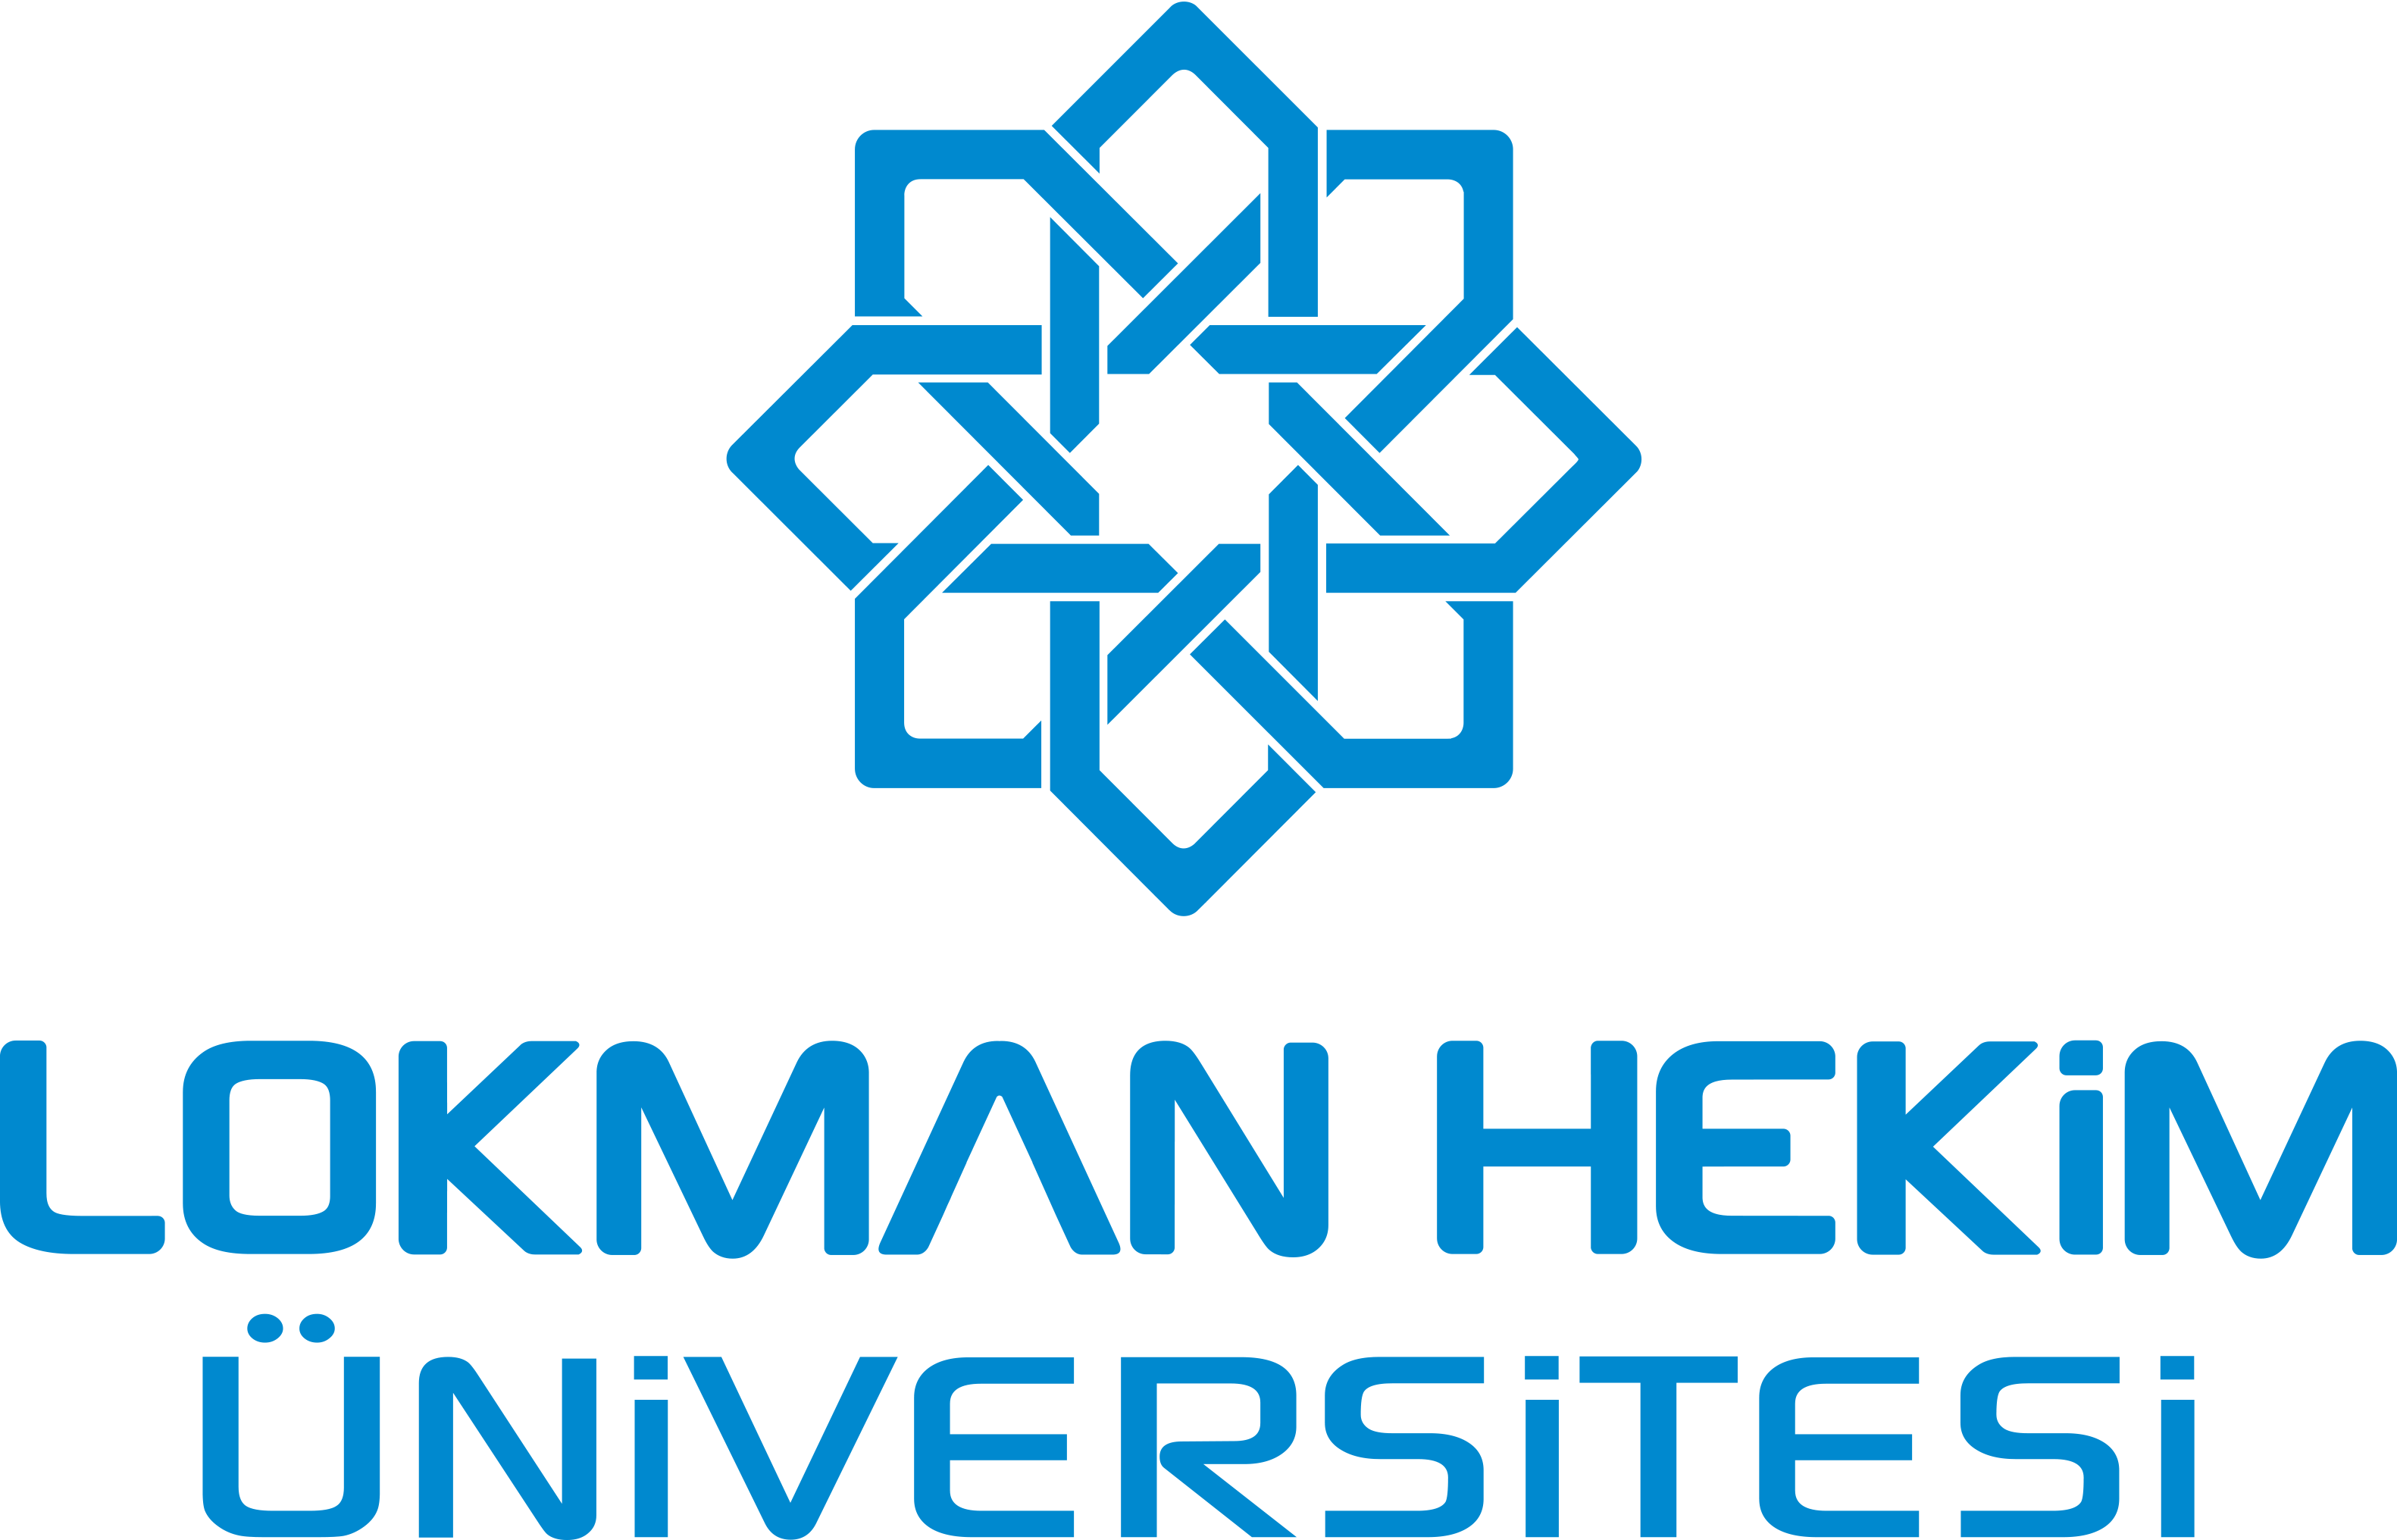 Lokman Hekim Üniversitesi